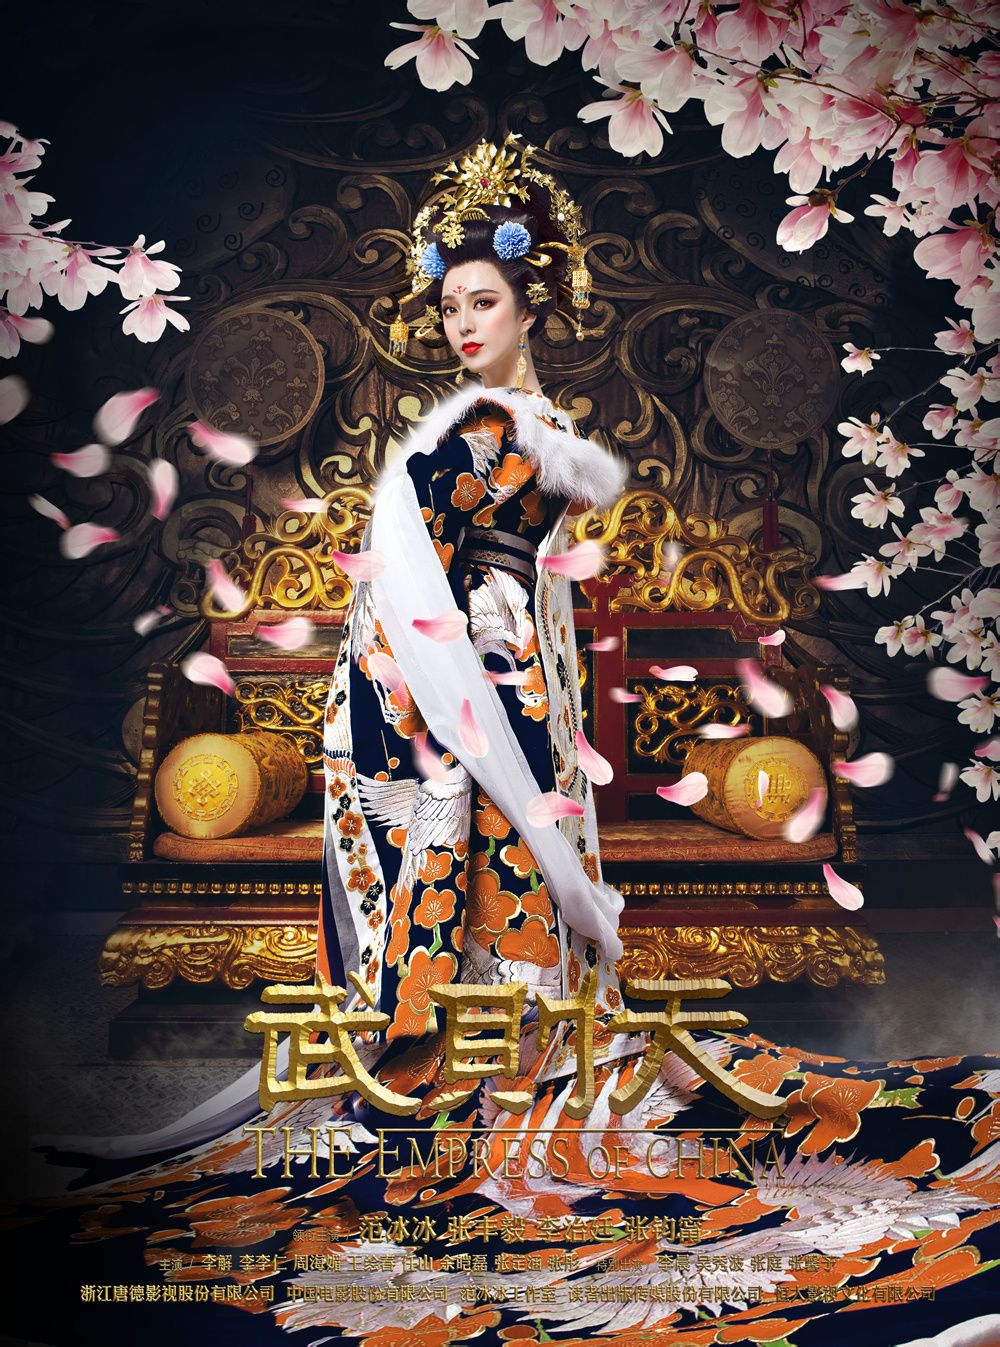 The Empress of China, la nueva serie que muestra el esplendor de una dinastía